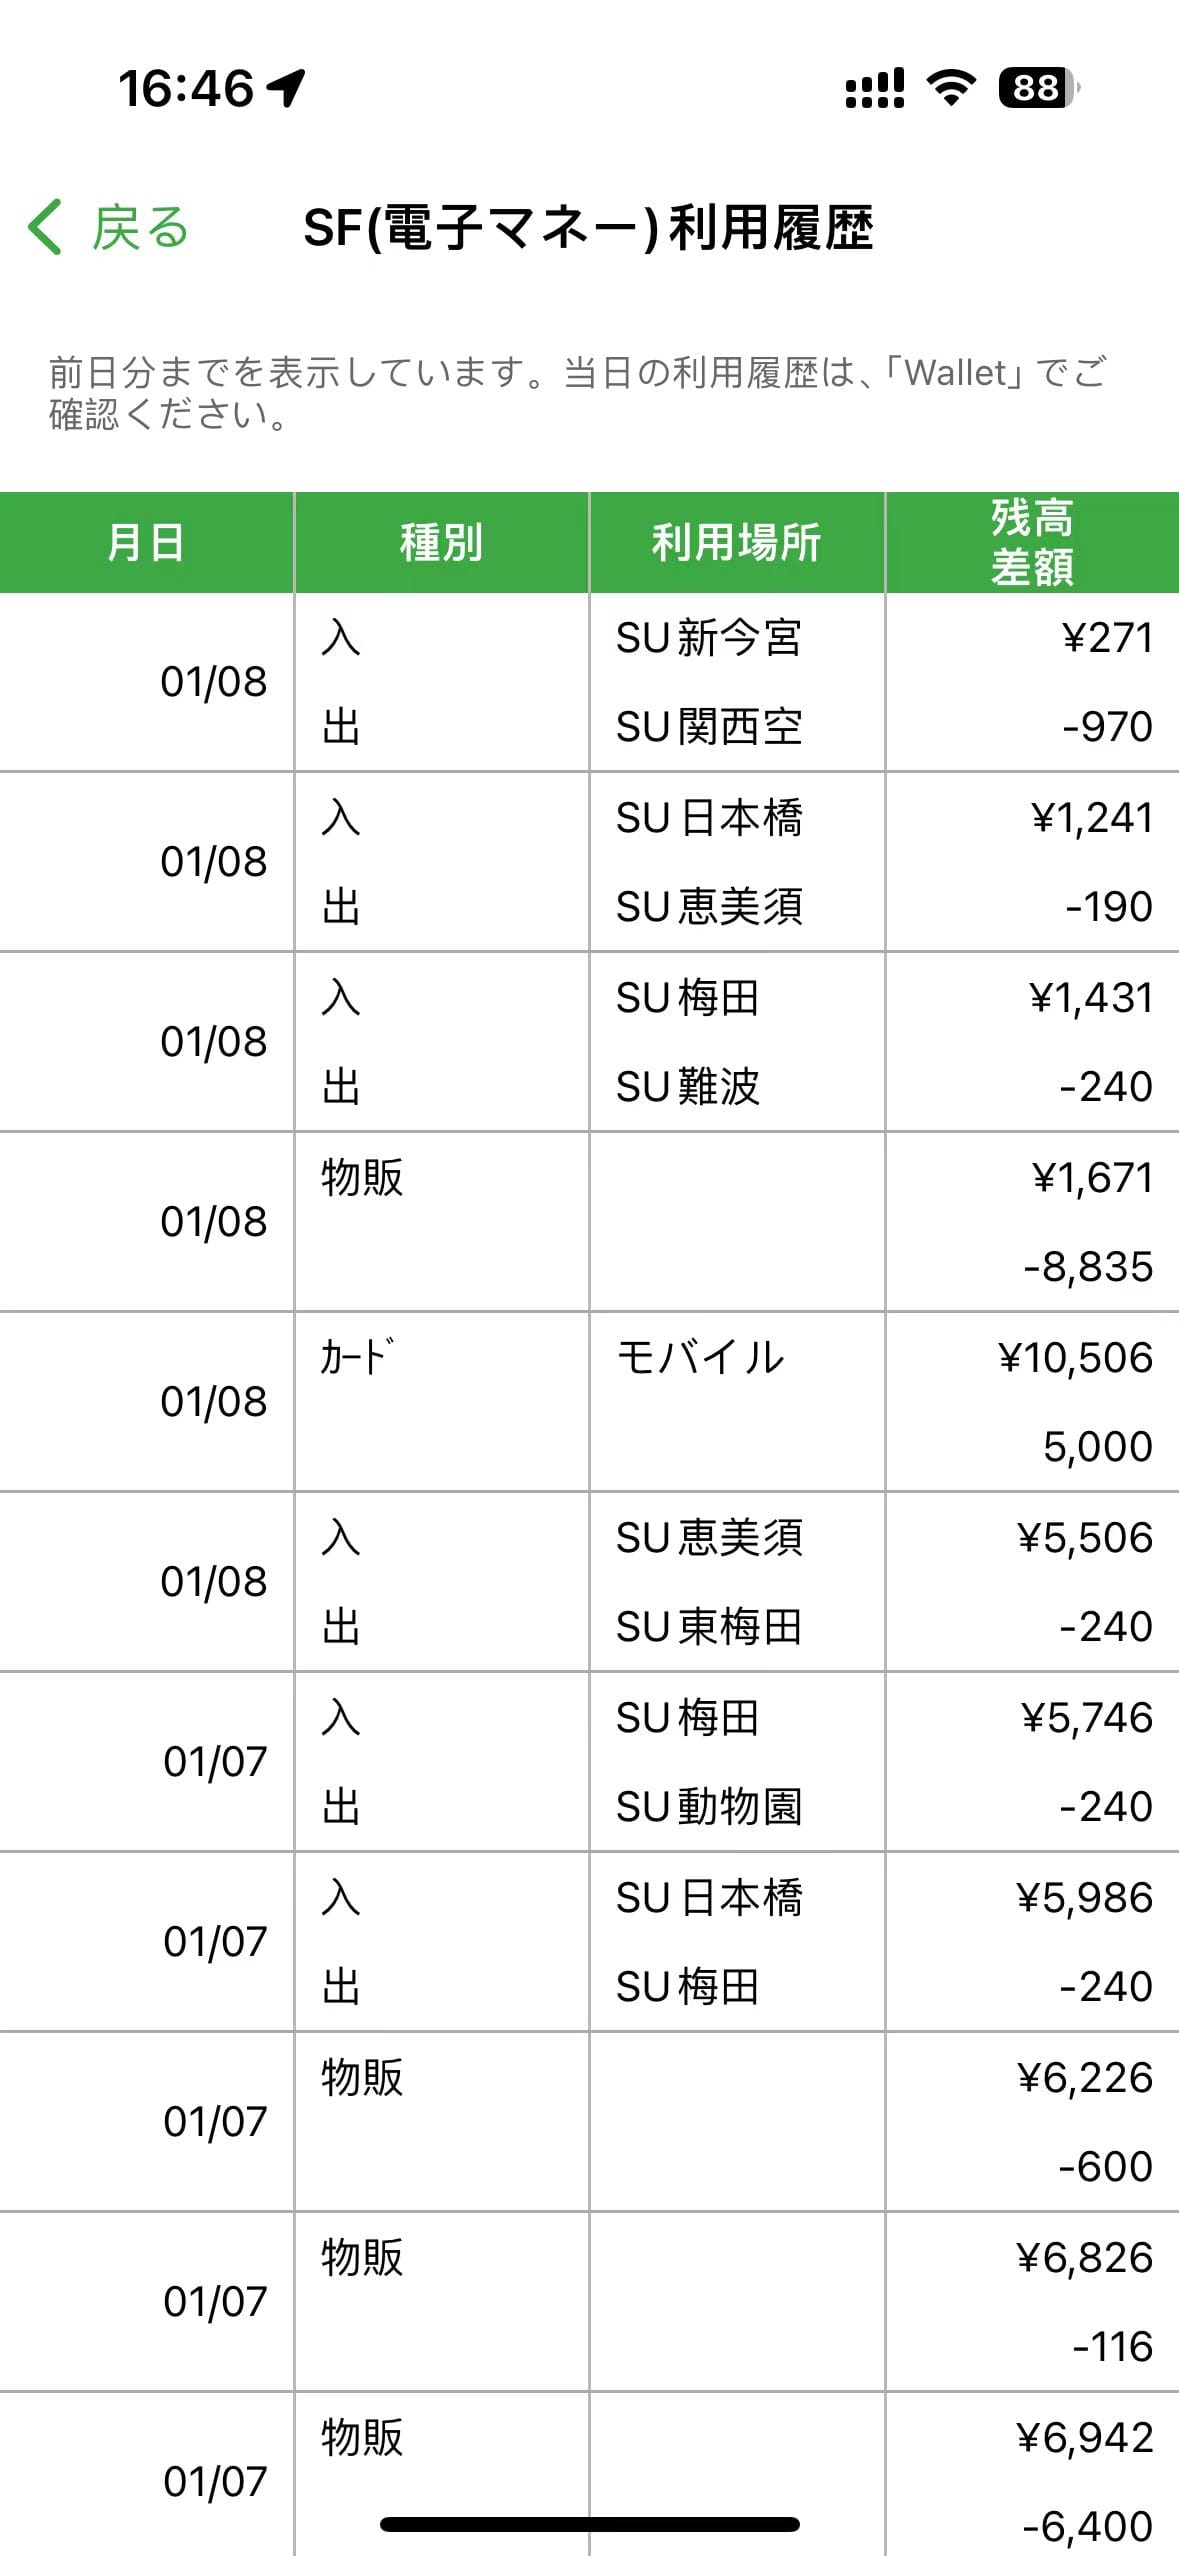 Suica APP 消费记录